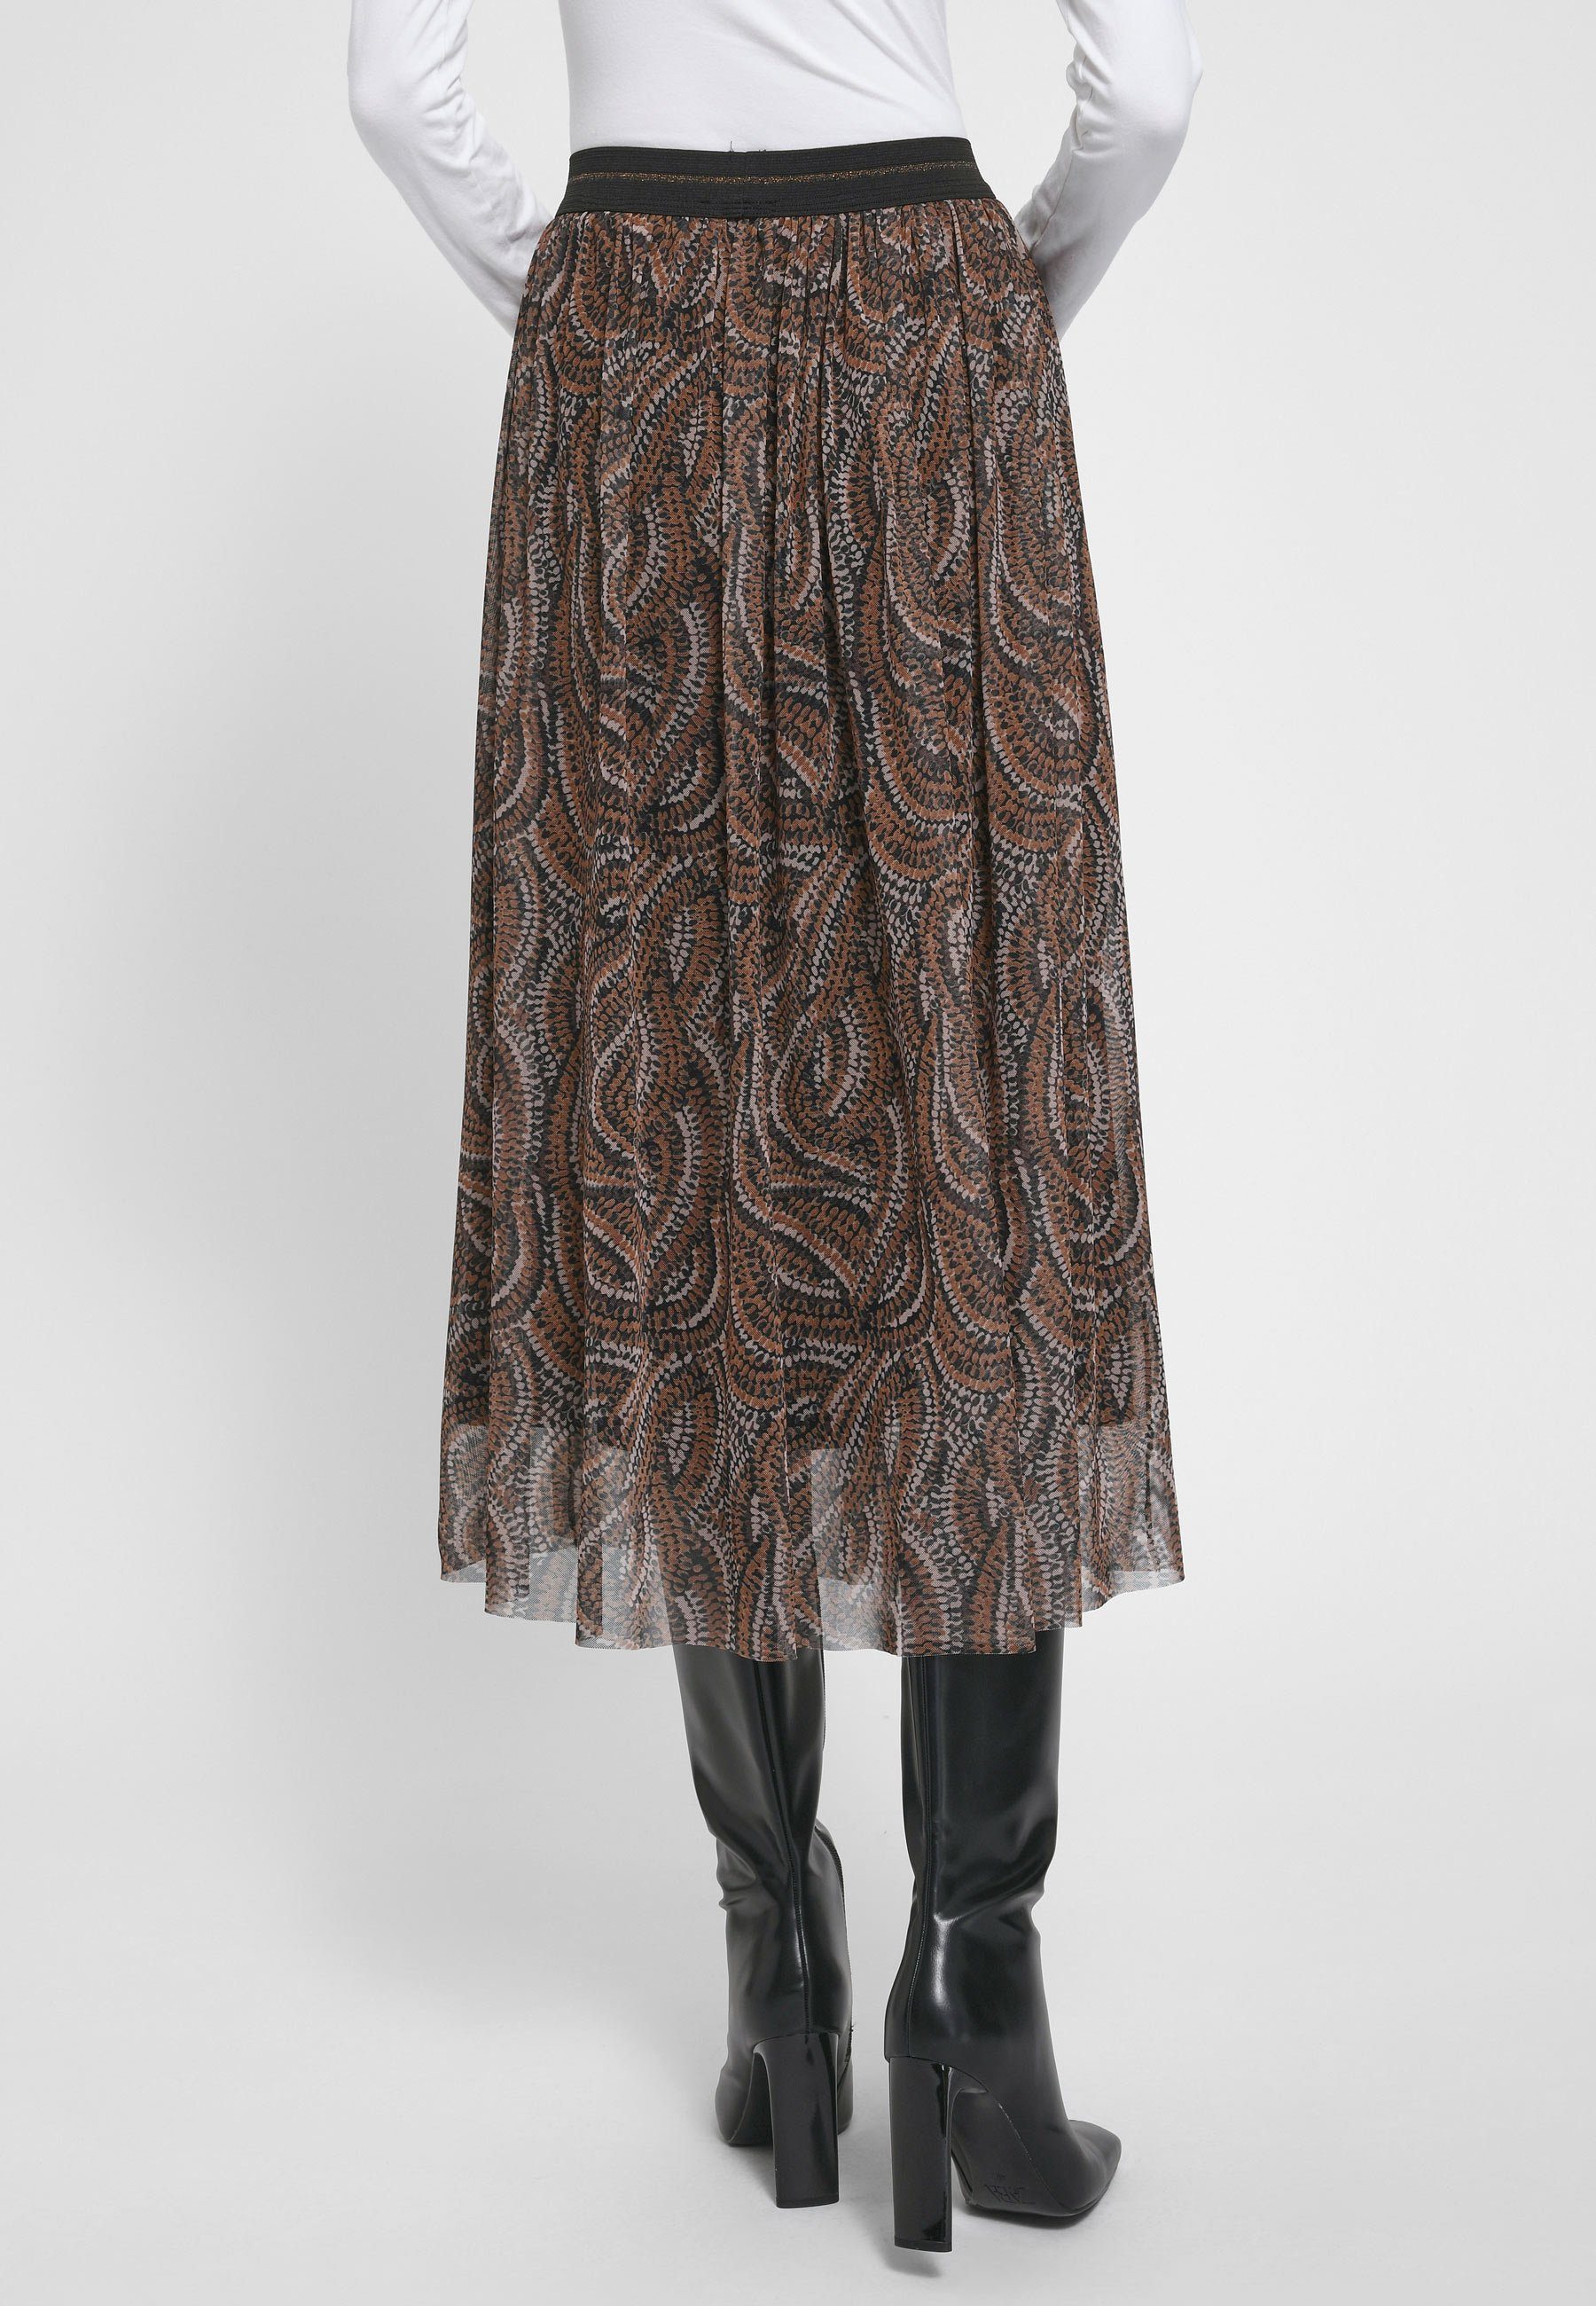 mit modernem Skirt A-Linien-Rock Hahn Design Peter